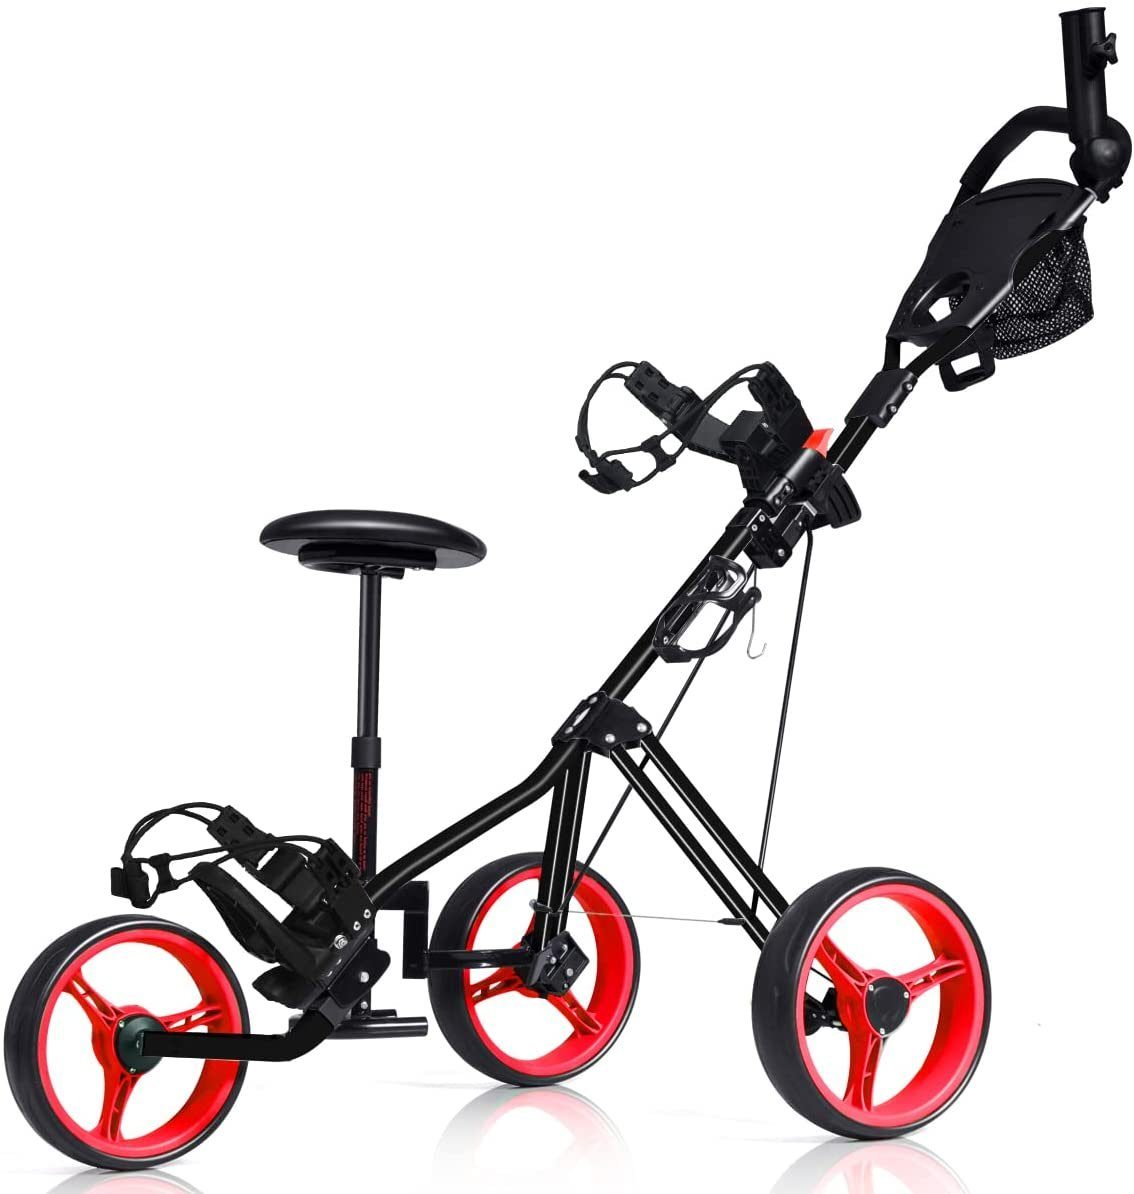 COSTWAY Golftrolley 3-Rad Golfwagen, klappbar, mit verstellbarem Sitz, Griff rot | Sport-Trolleys